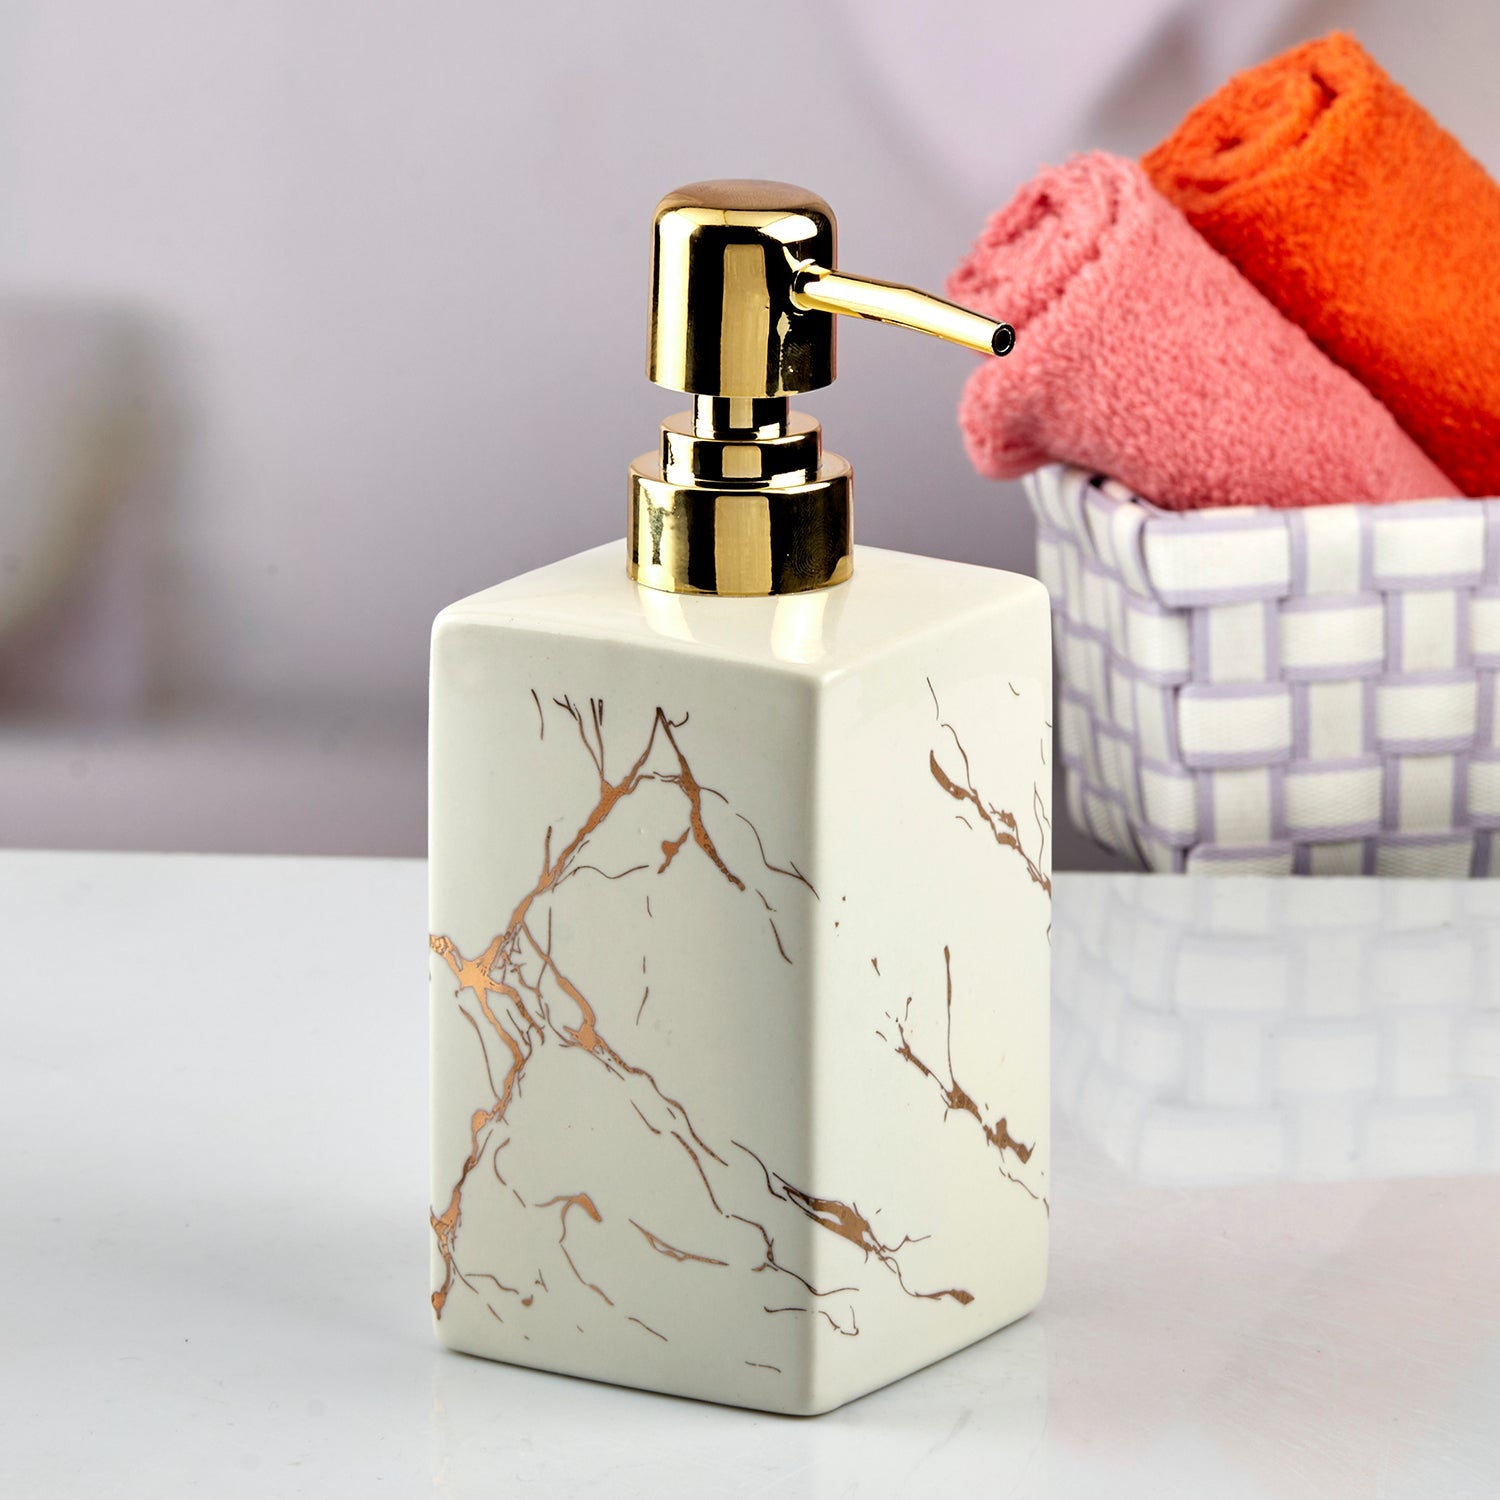 Ceramic Soap Dispenser liquid handwash pump for Bathroom, Set of 1, White (10620)